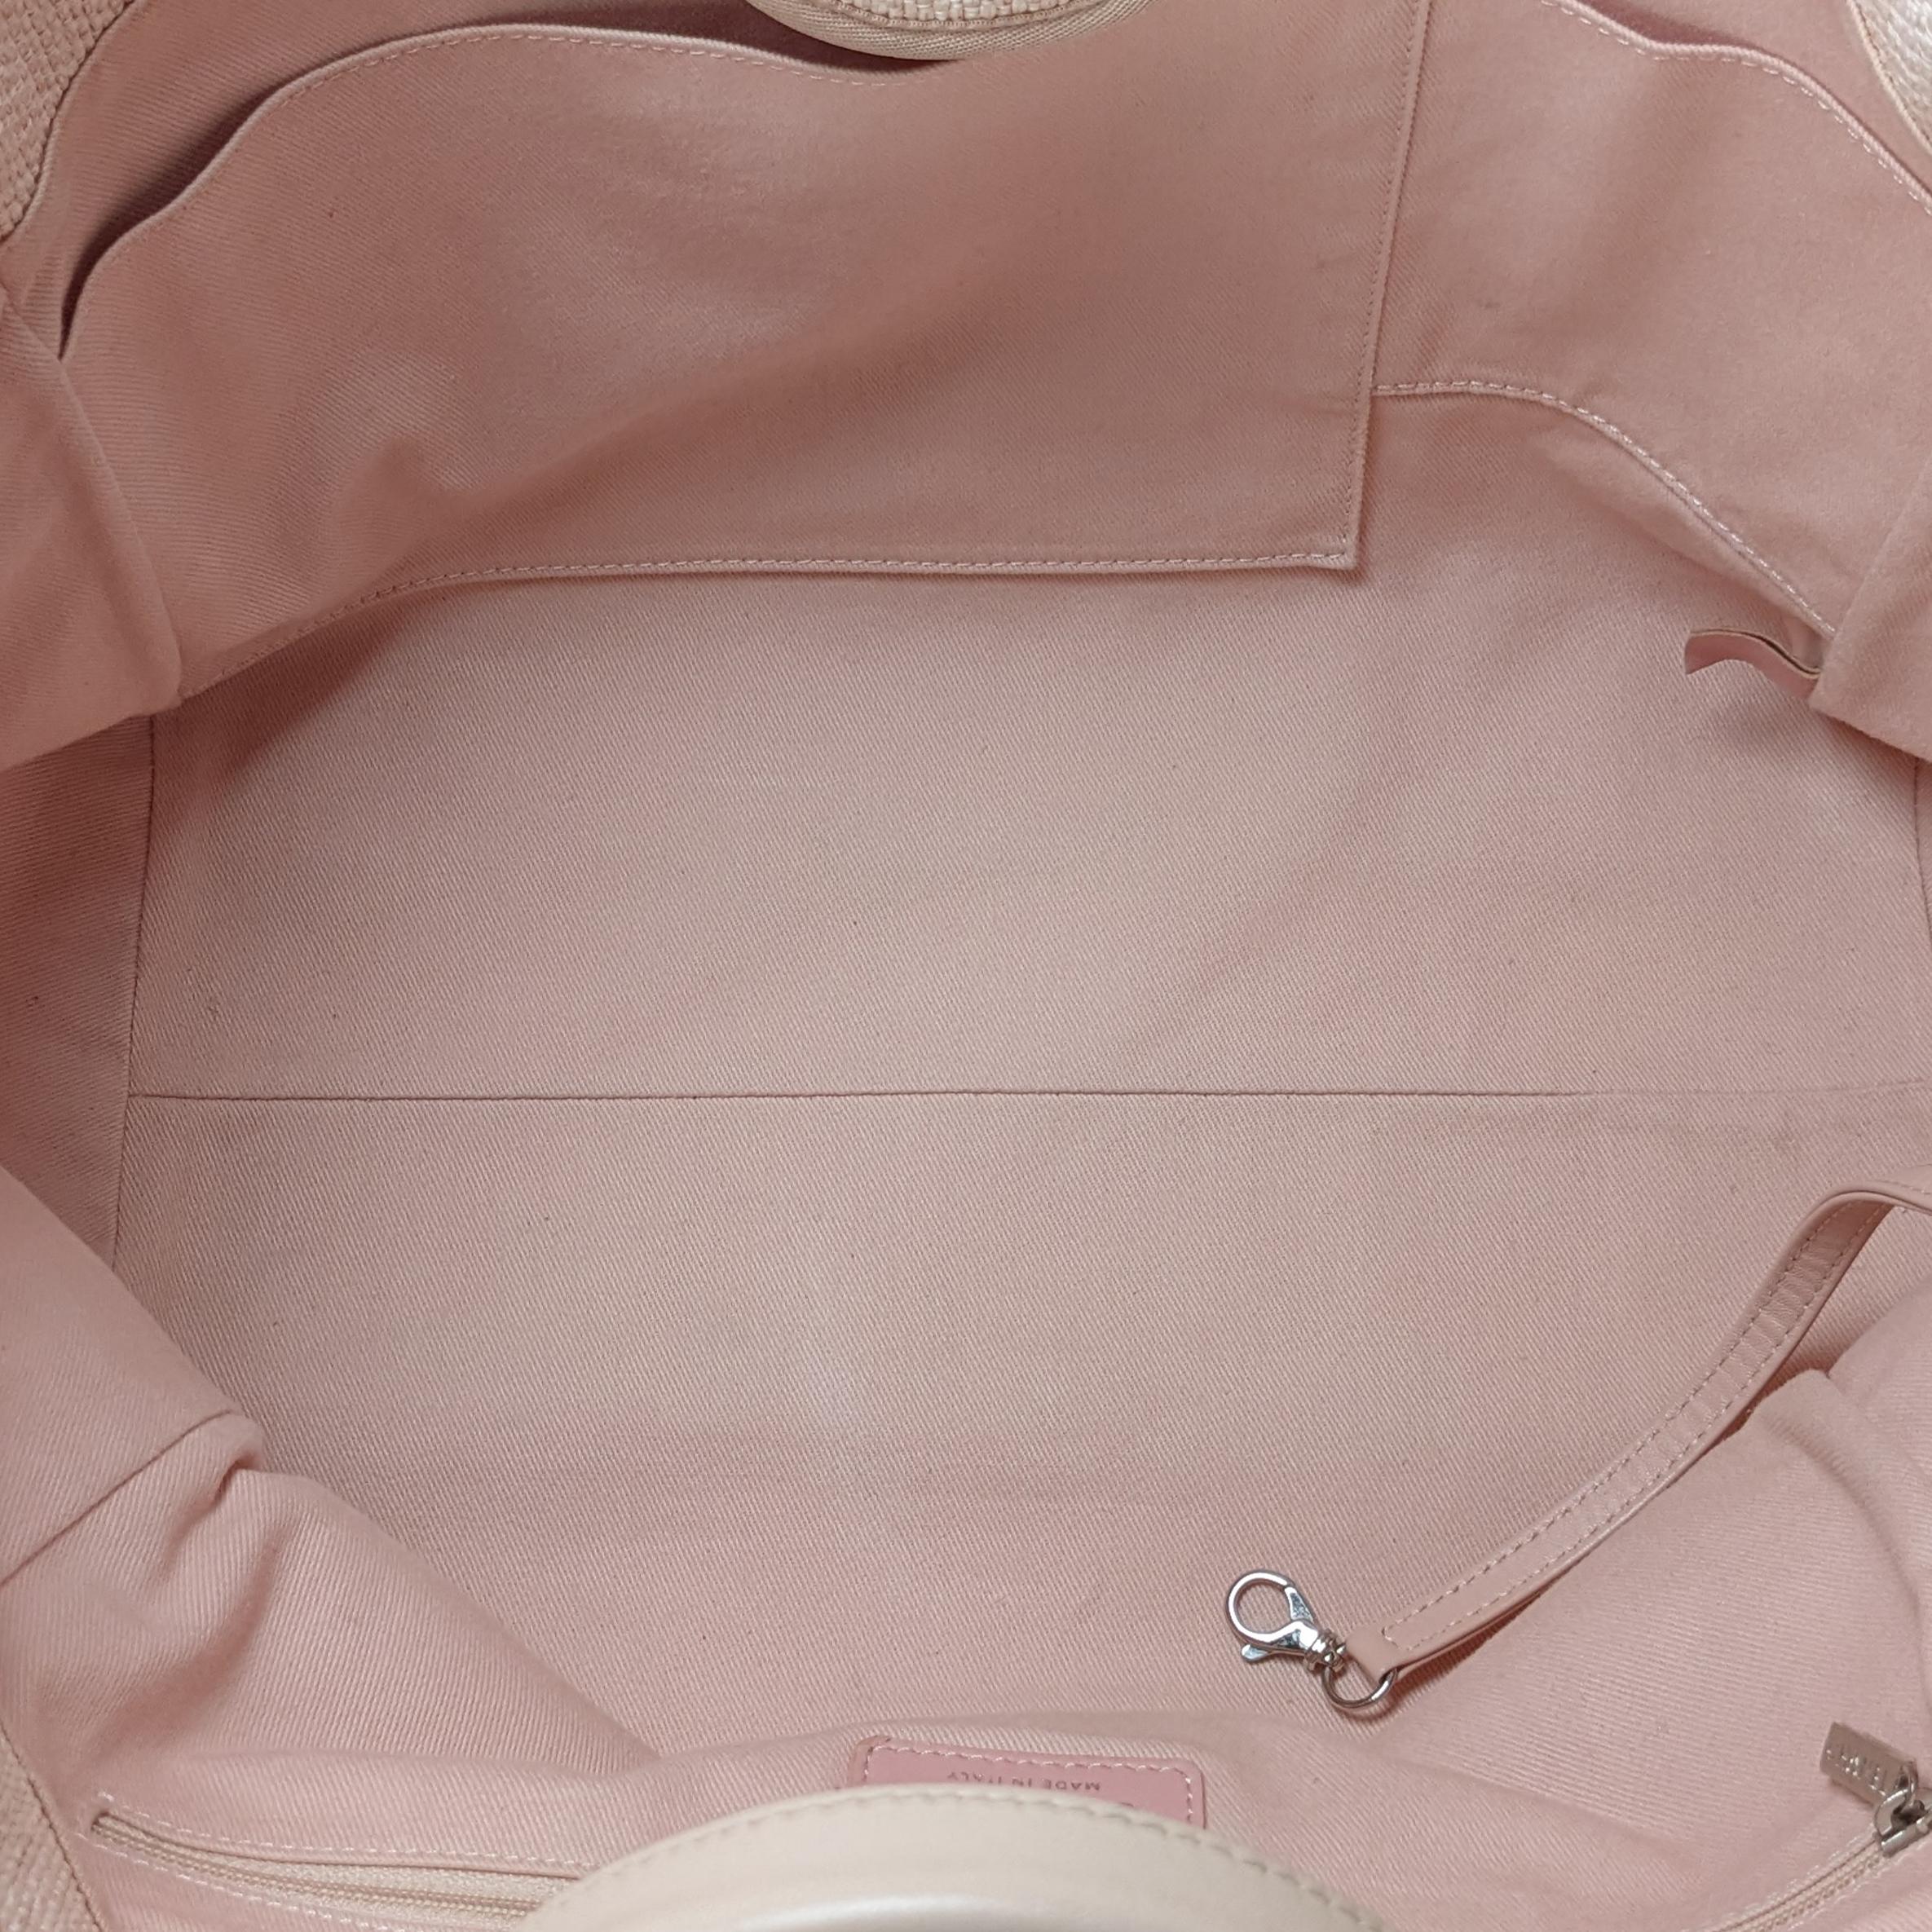 Sac cabas Deauville en raphia rose tissé de taille moyenne Chanel 5